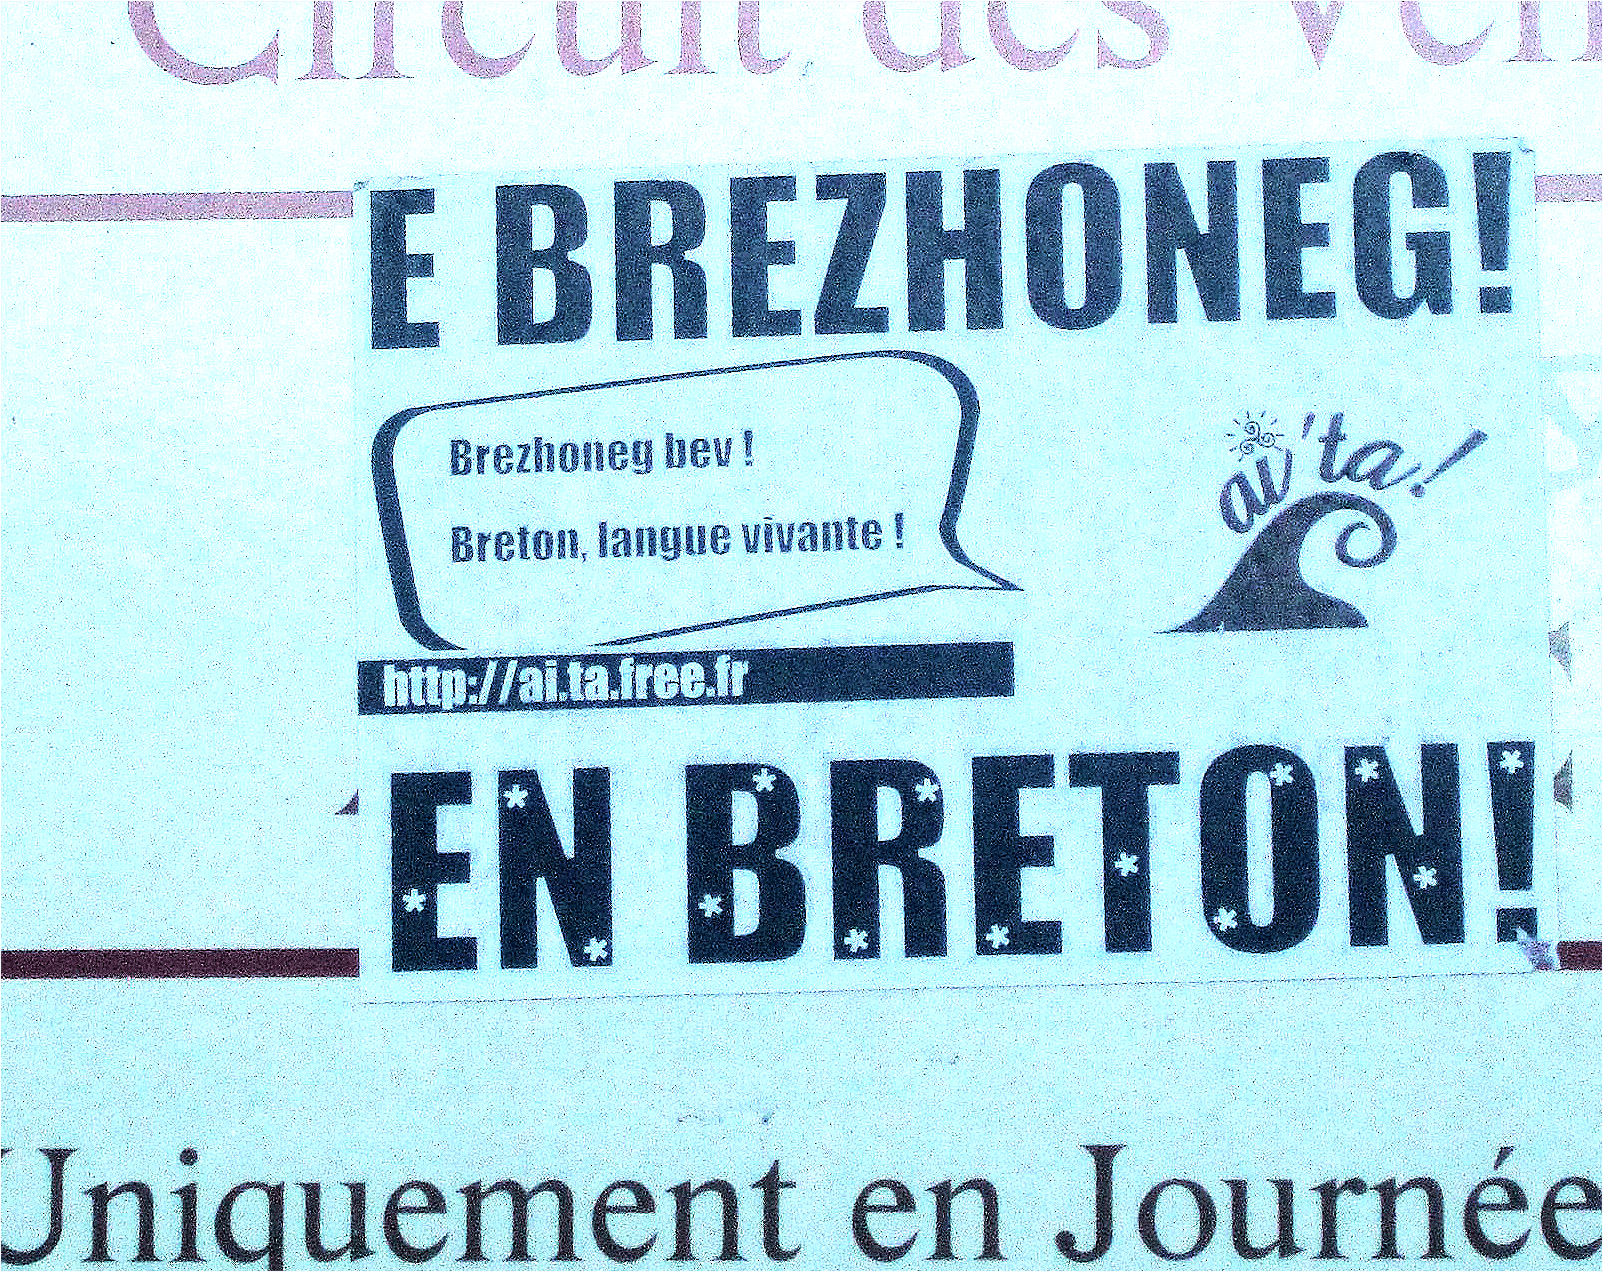 БРЕТОНСКИЙ ЯЗЫК, кельтский язык Бретани На бретонском языке говорят ок 700 тыс человек, живущих во Франции западнее линии Сен-Бриё – Сен-Назер, в департаментах Финистер, Кот-дю-Нор и Морбиан; еще около полумиллиона человек во Франции и несколько десятков